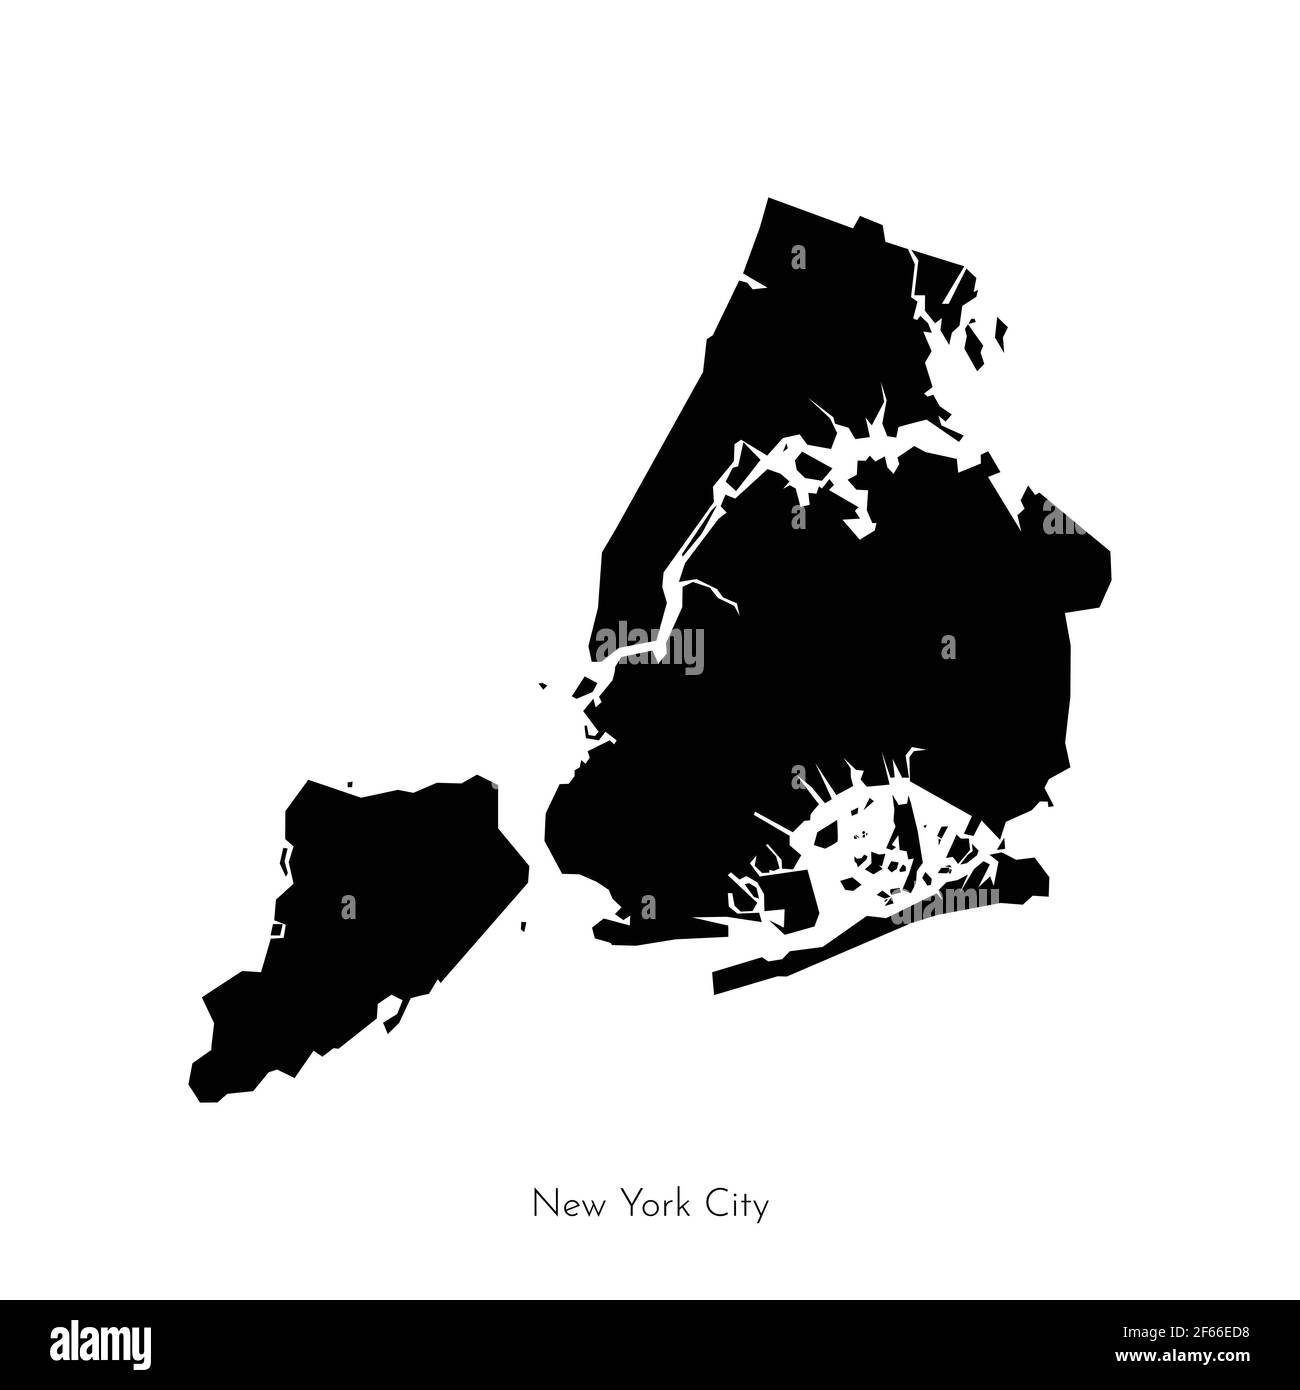 Illustration vectorielle isolée avec forme géométrique simplifiée de la carte de la ville de New York (ville aux États-Unis). Silhouette noire de la Big Apple (NY Illustration de Vecteur